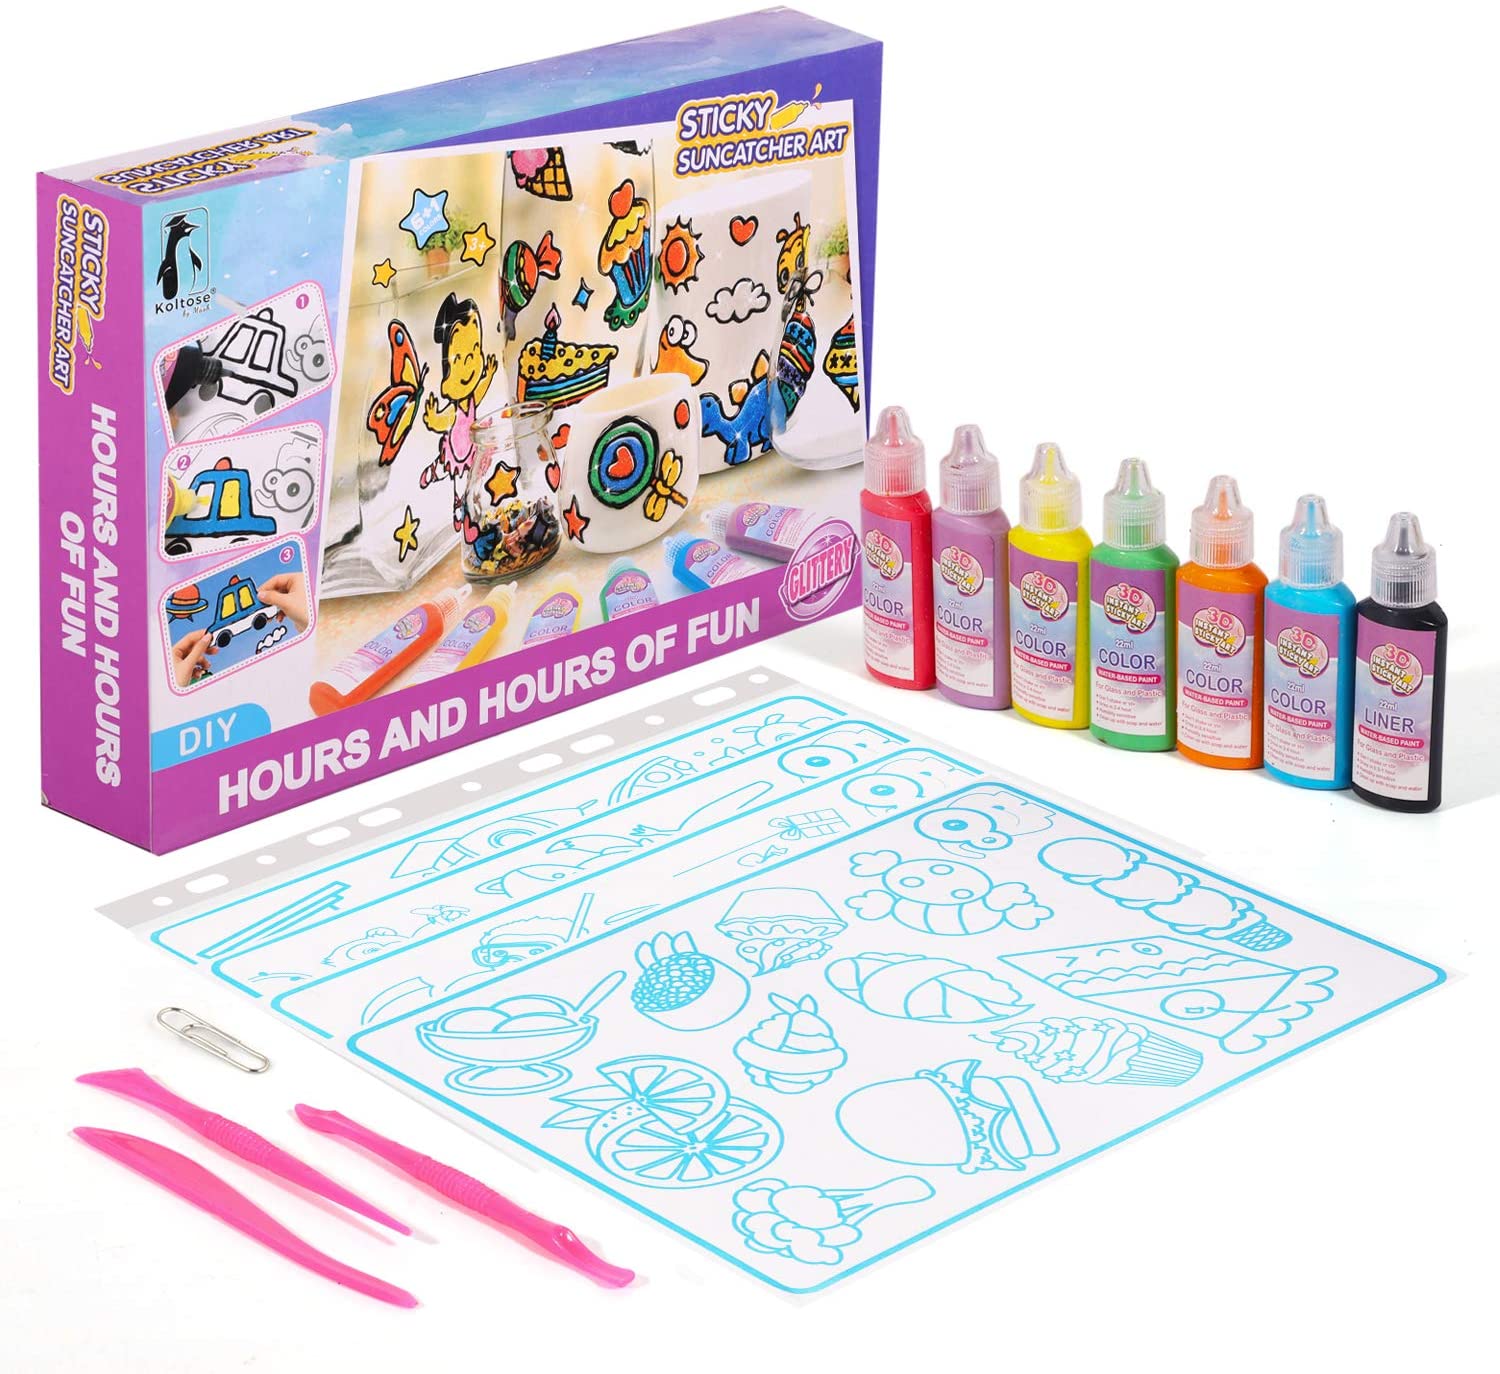 Koltose by Mash Sticky Suncatcher Art Craft Kit for Kids - Sun Catcher Window Art Craft Kit for Girls and Boys Ages 4 - 15, Ove